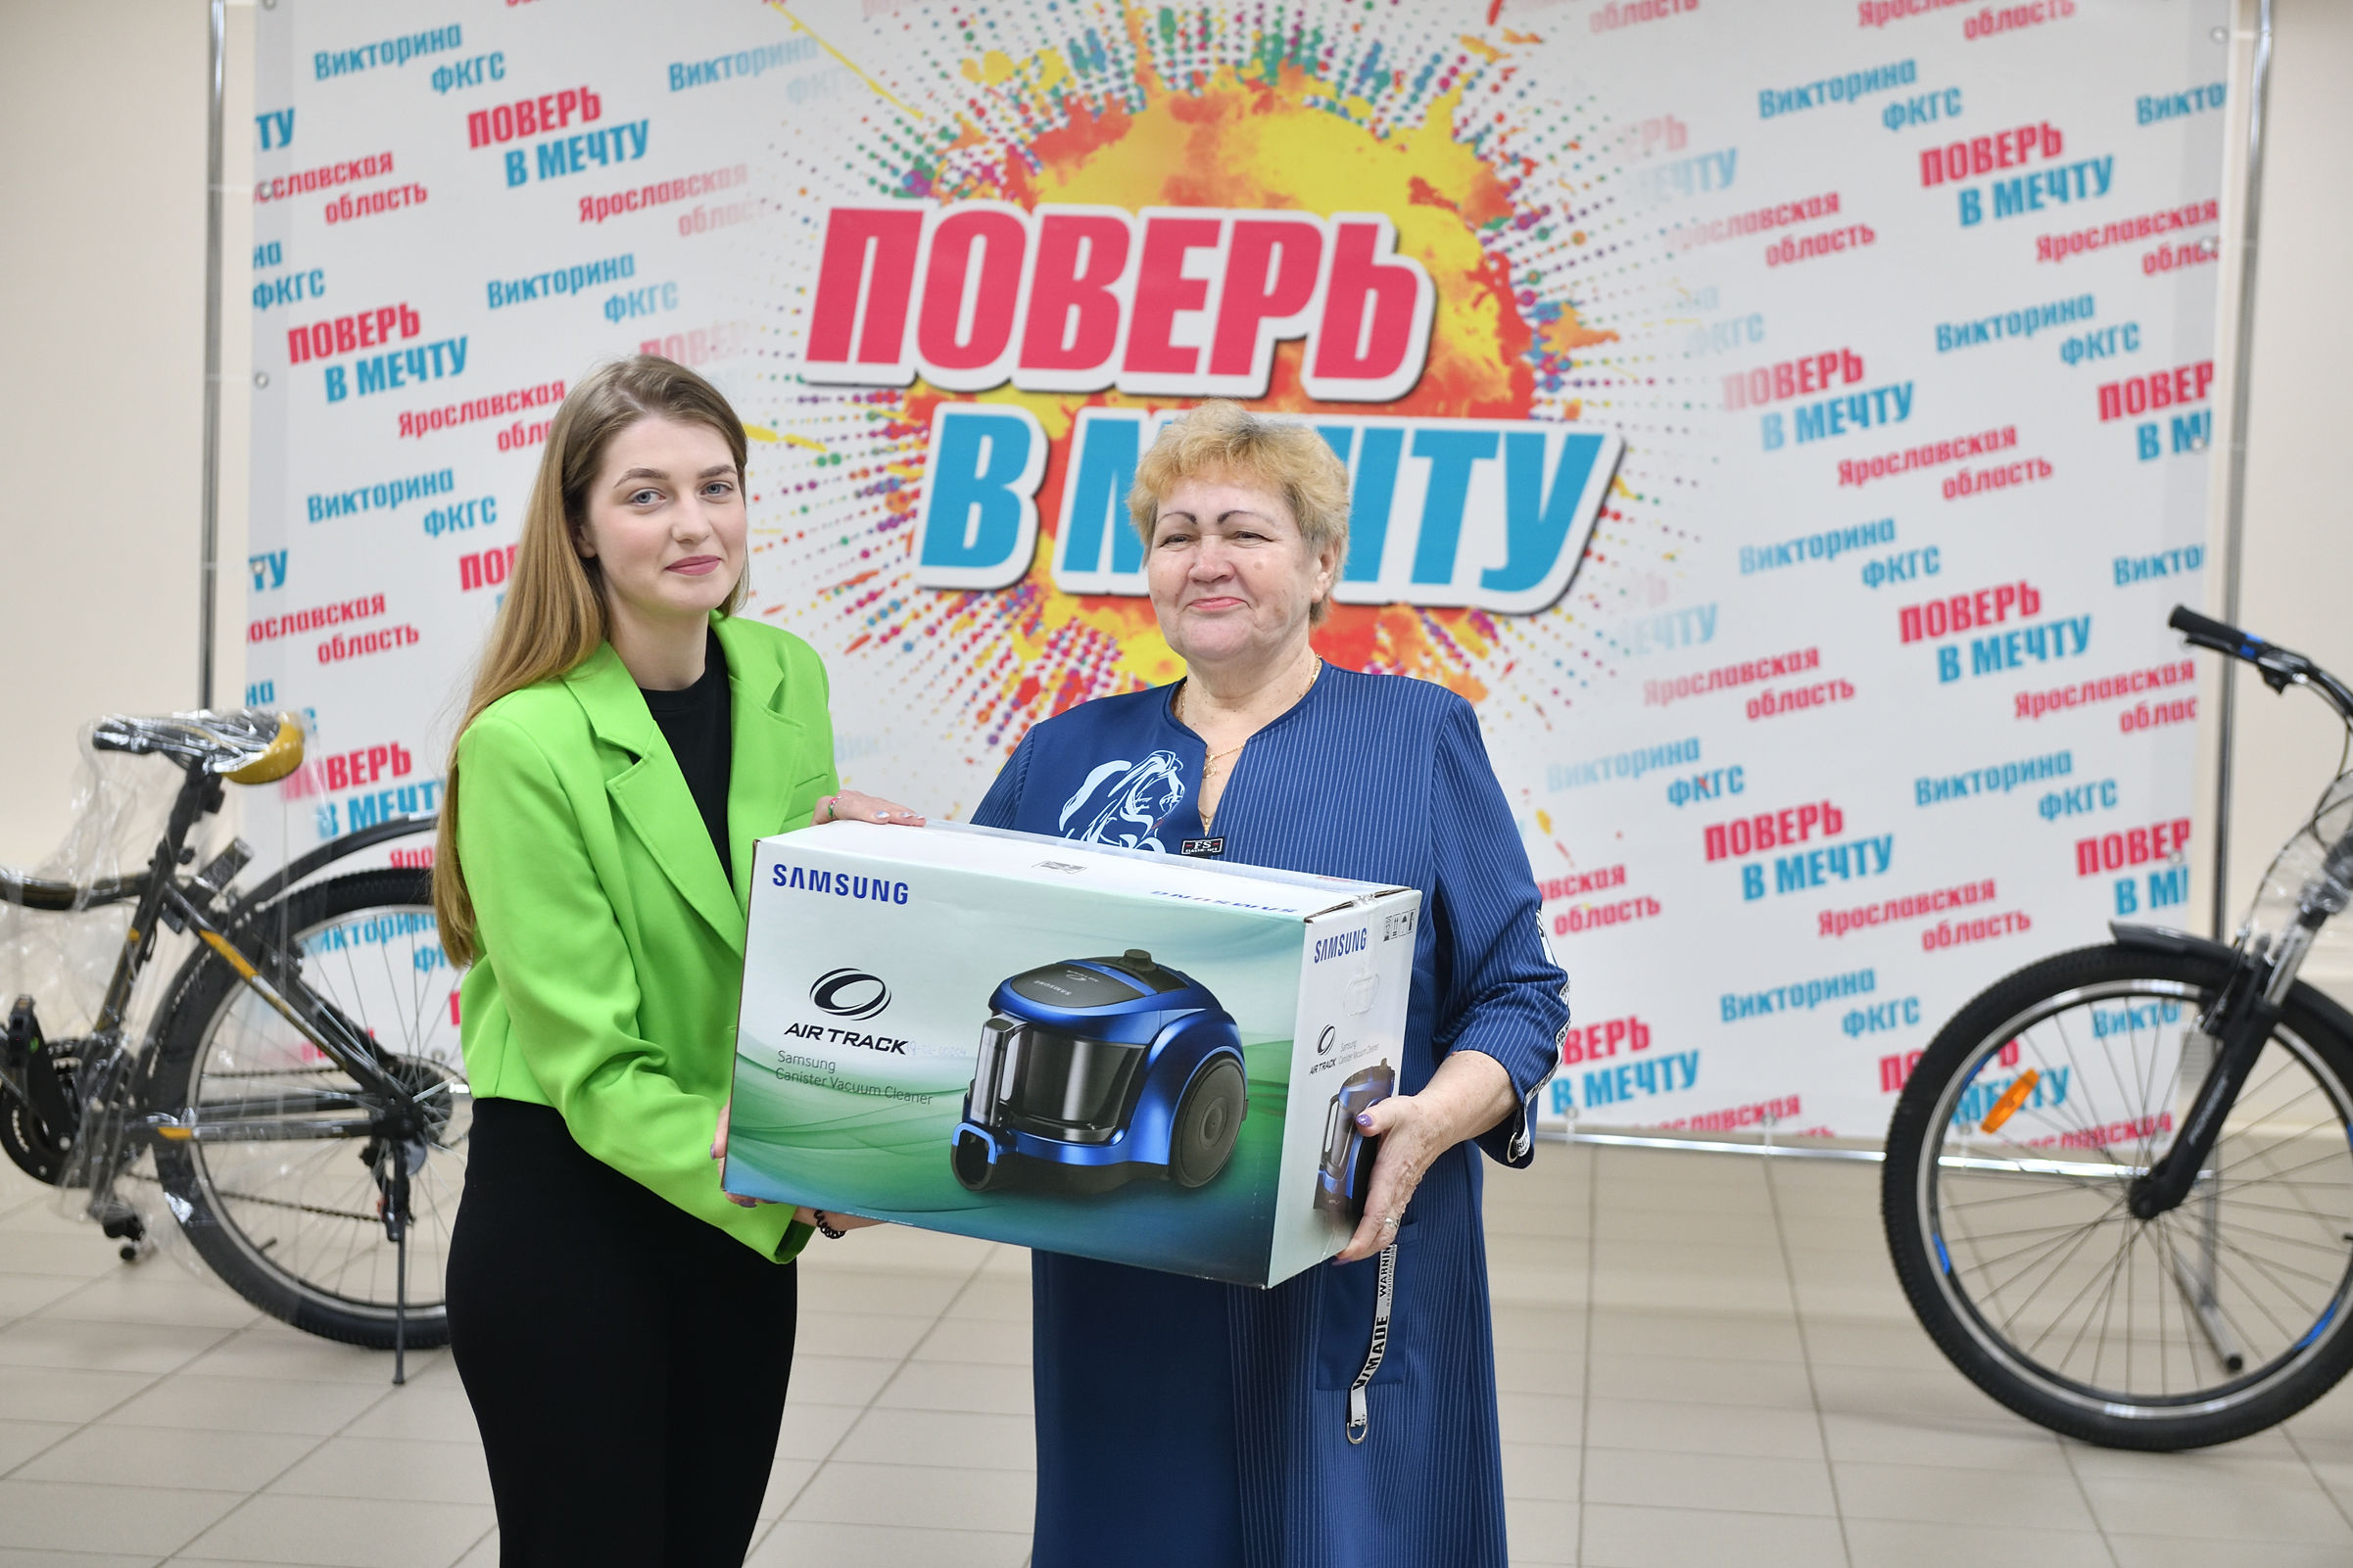 Жительница Углича выиграла приз к дню рождения в викторине ФКГС «Поверь в мечту!»